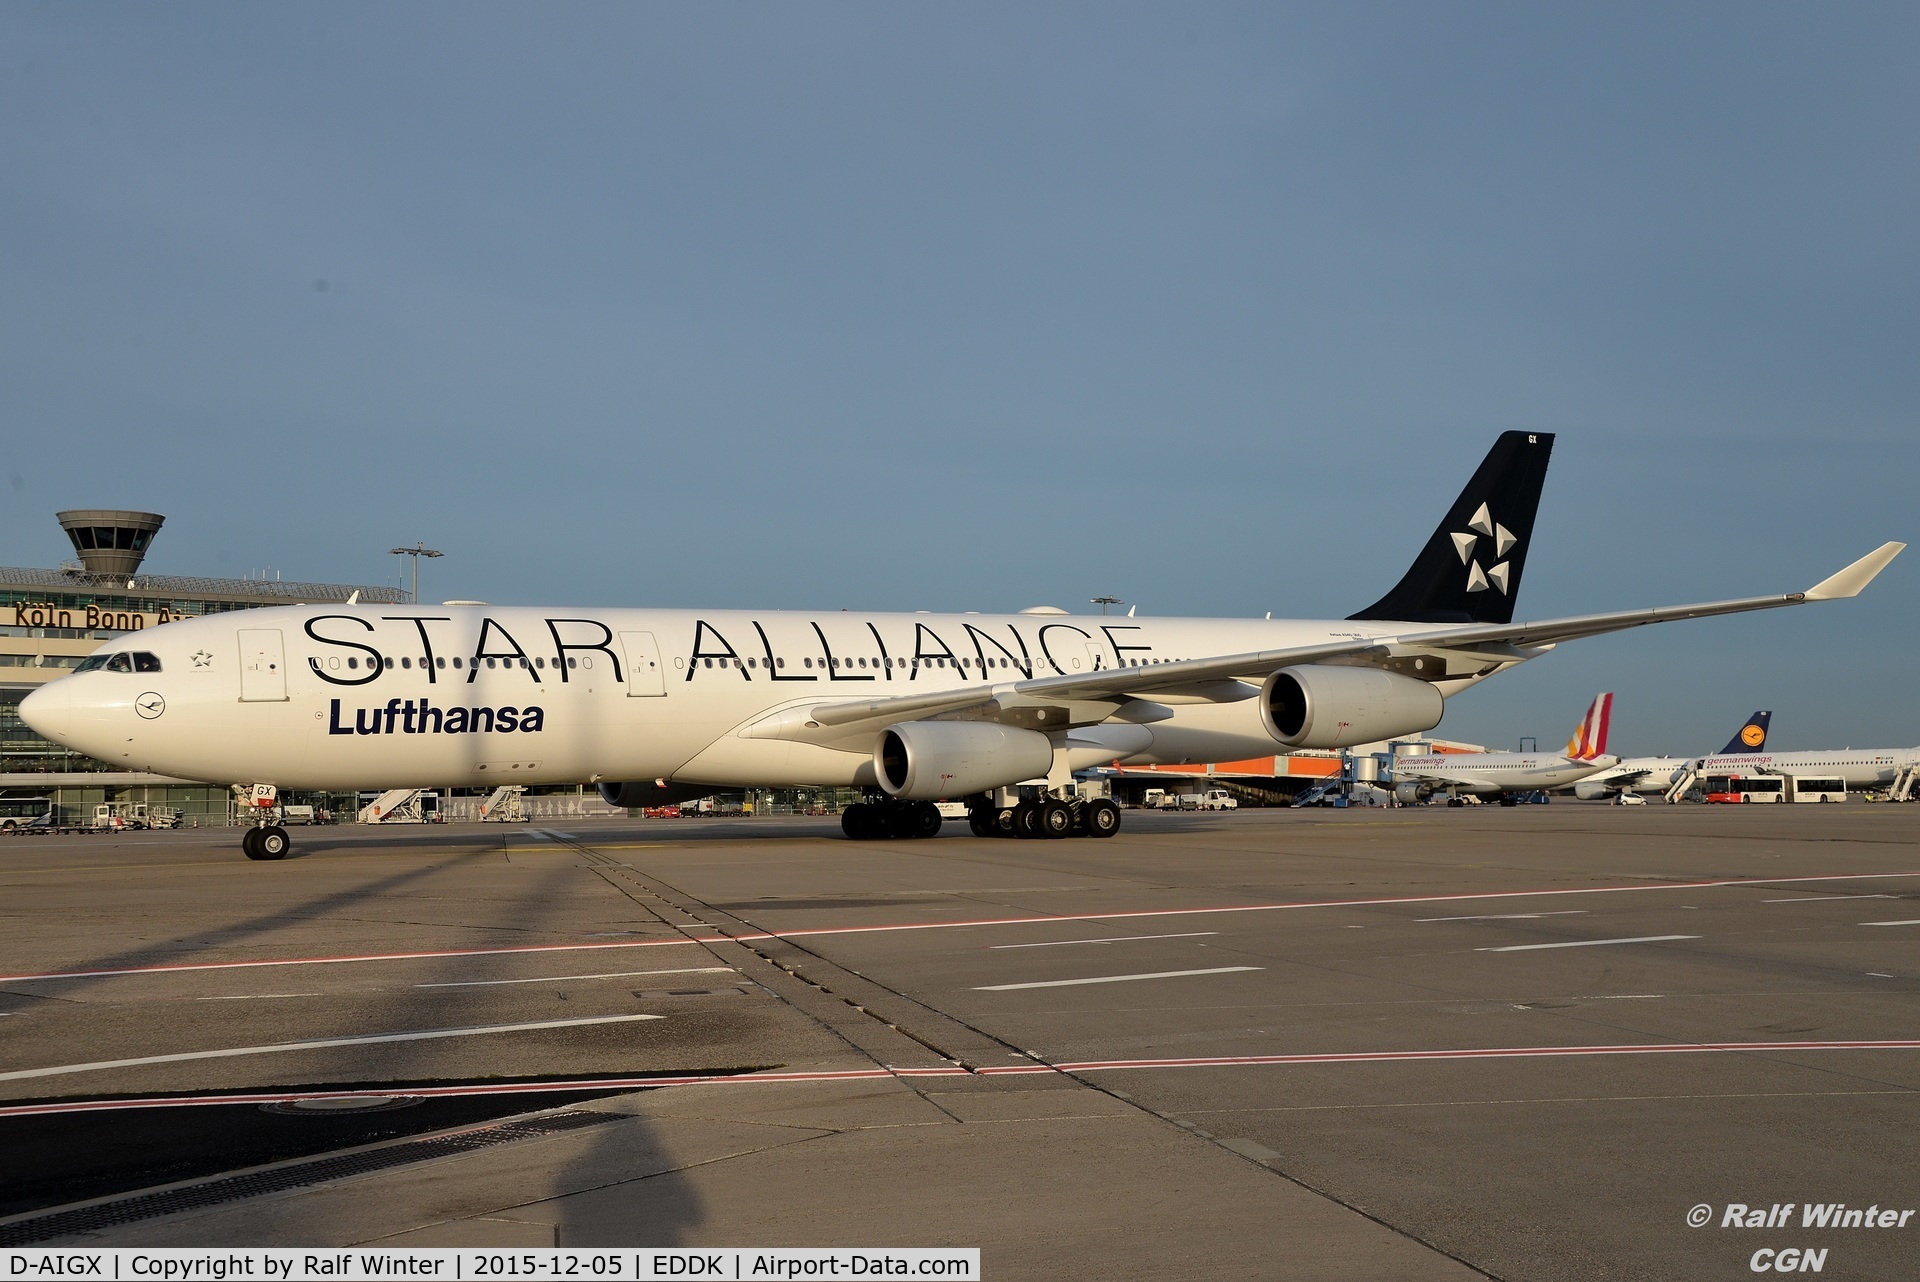 D-AIGX, 2000 Airbus A340-313X C/N 354, Airbus A340-313 - Lufthansa Star Alliance - D-AIGX - 05.12.2015 - CGN